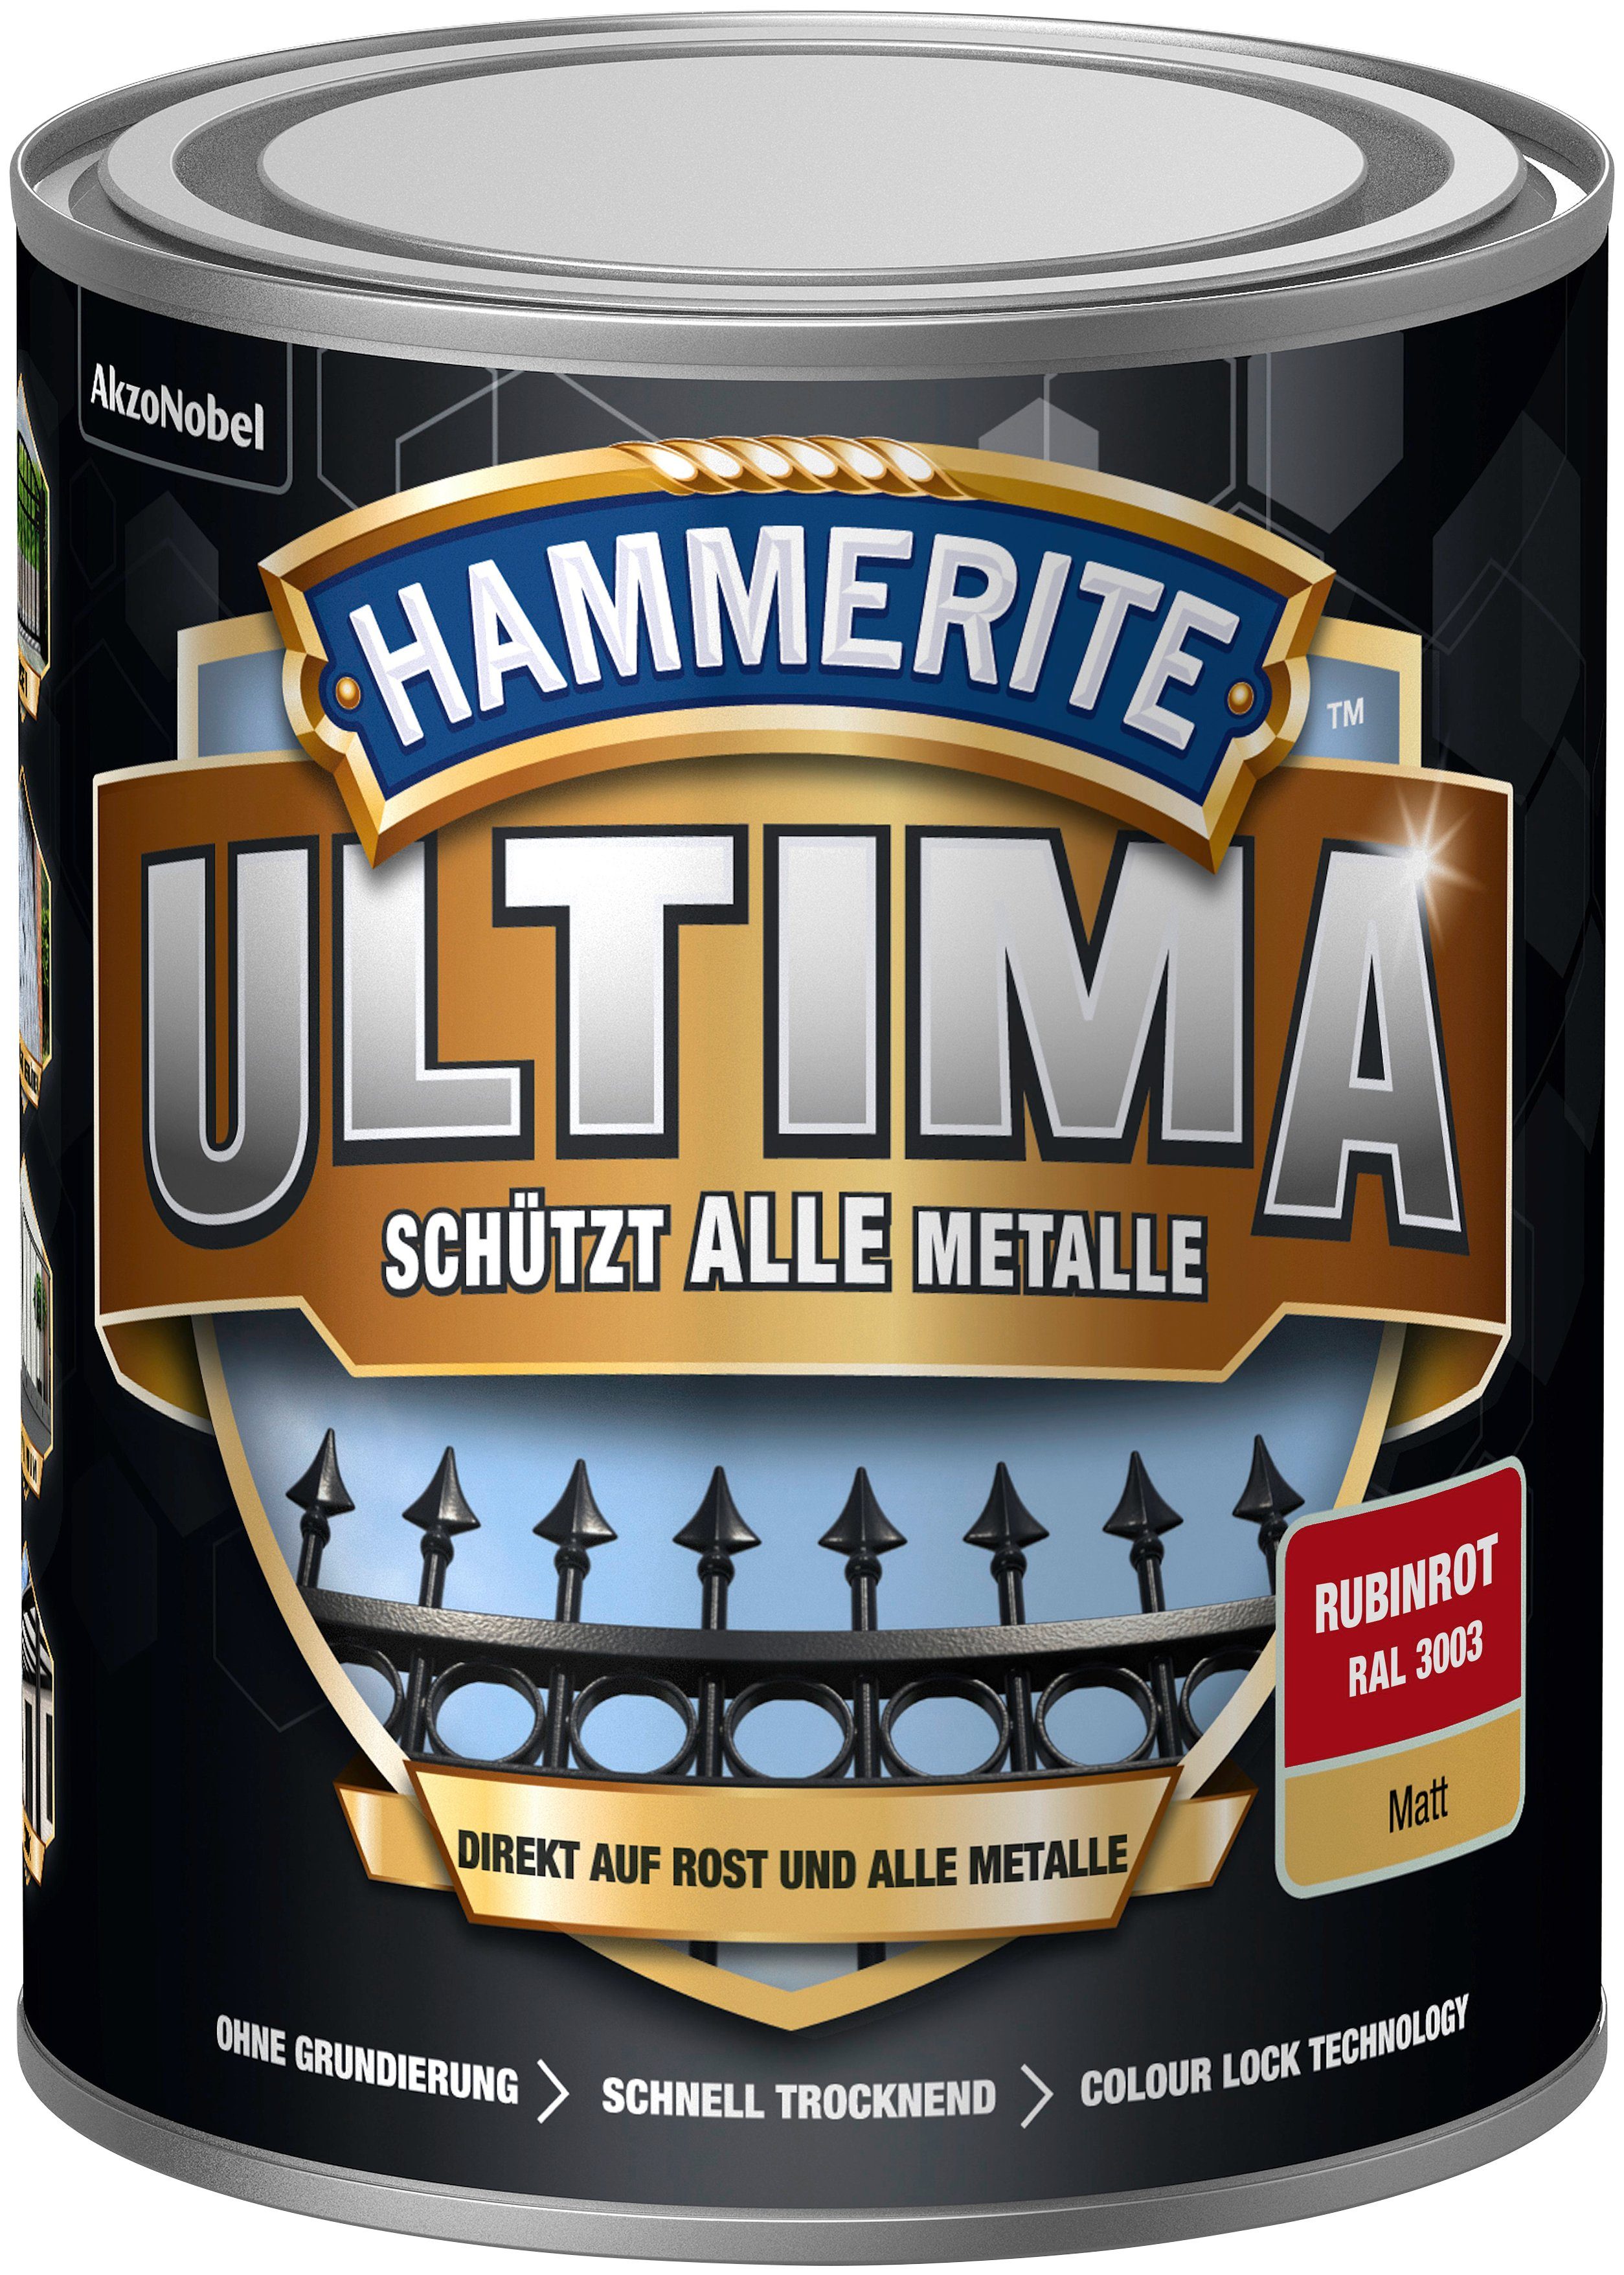 Metalle, rubinrot 3in1, alle RAL 3003, Hammerite  matt Metallschutzlack schützt ULTIMA